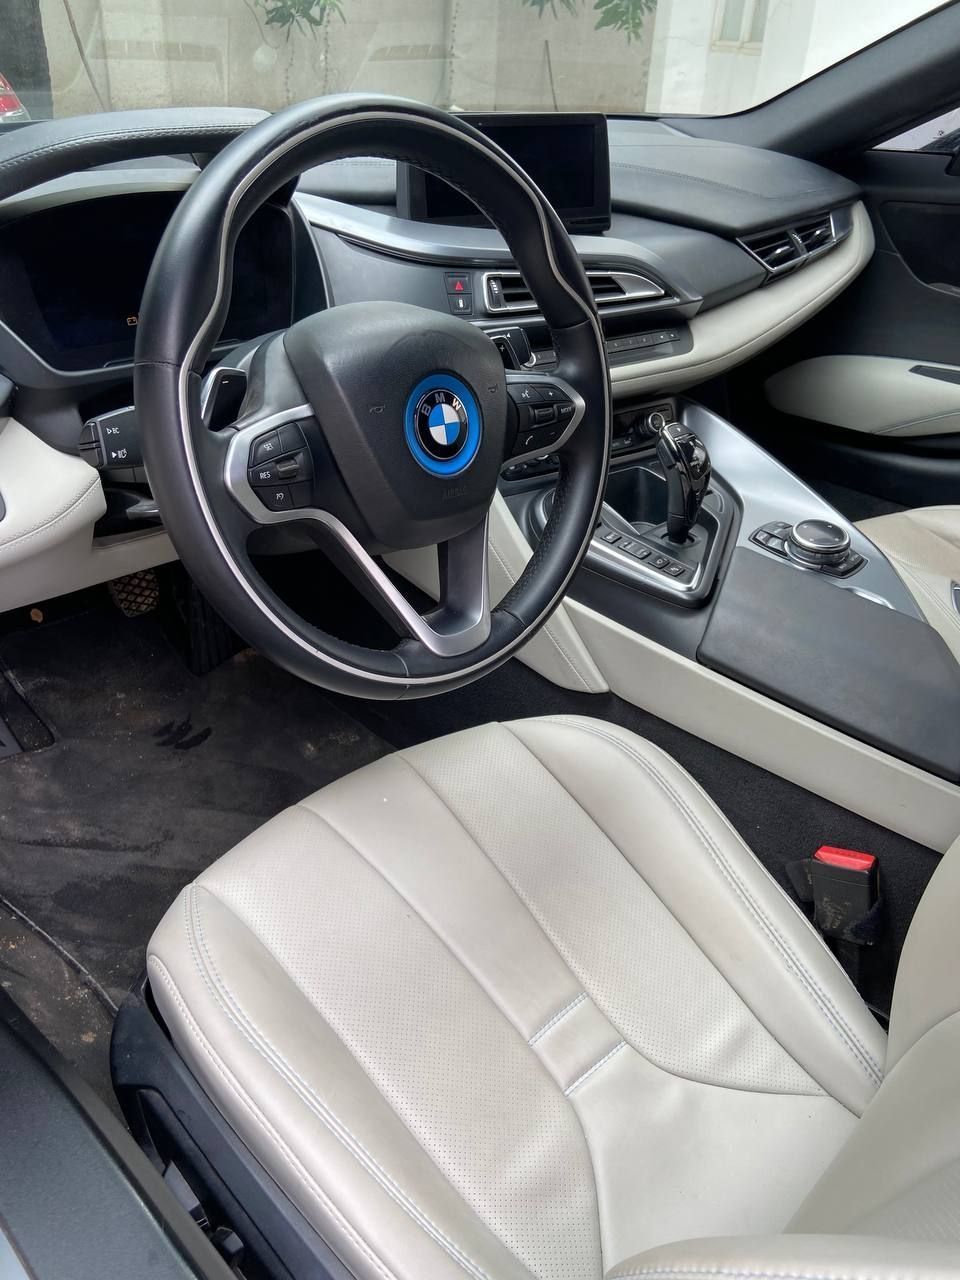 BMW i8 2015